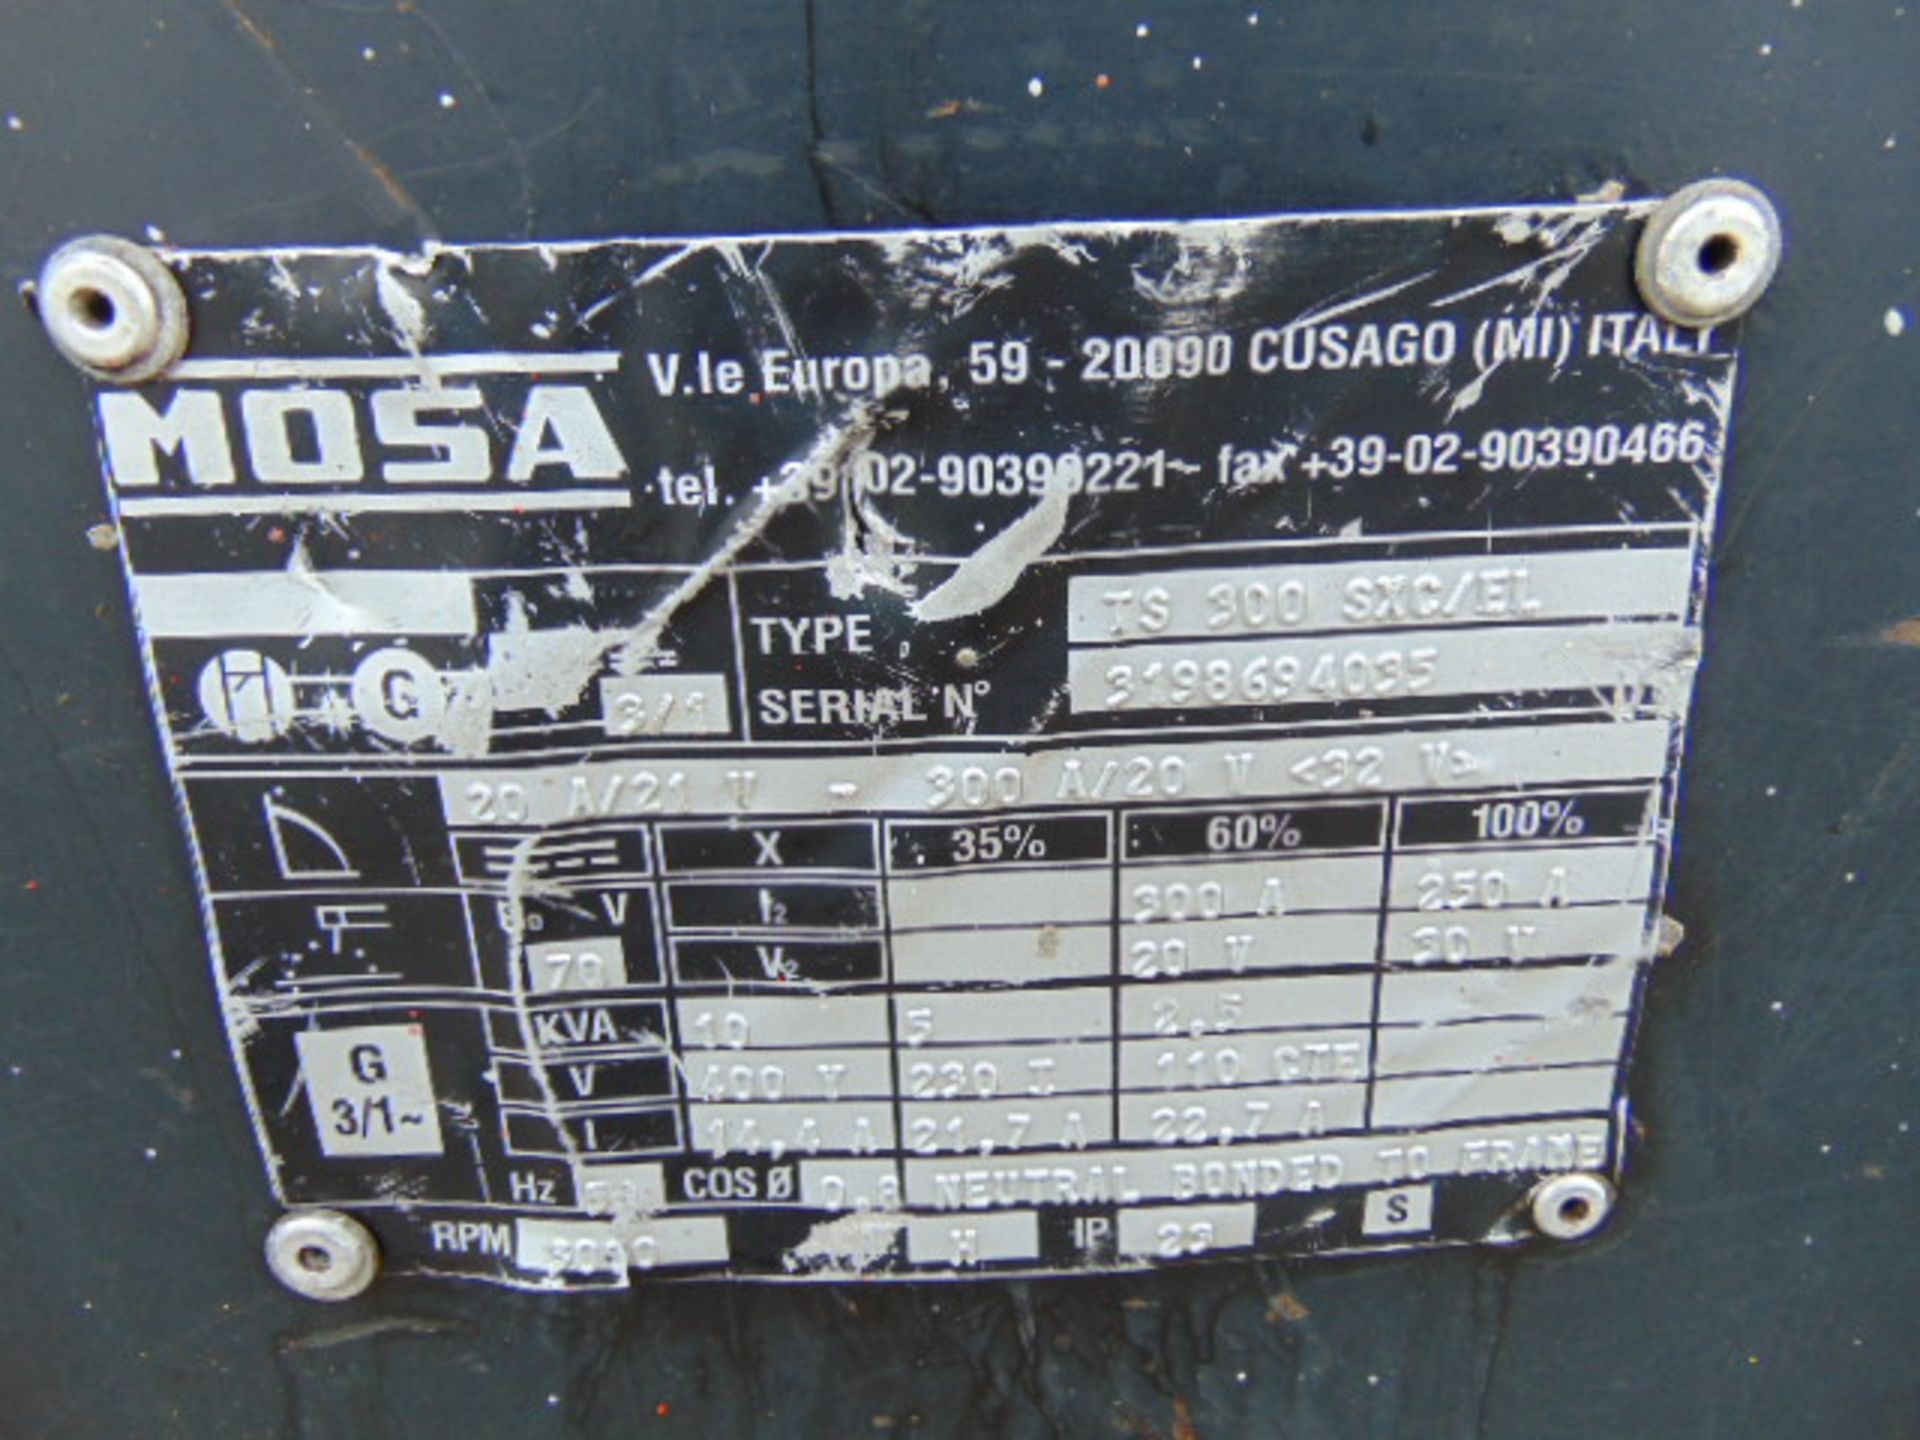 Mosa TS300 SXC/EL Diesel Welder 10 KVA Generator ONLY 3,445 HOURS!. - Image 10 of 10